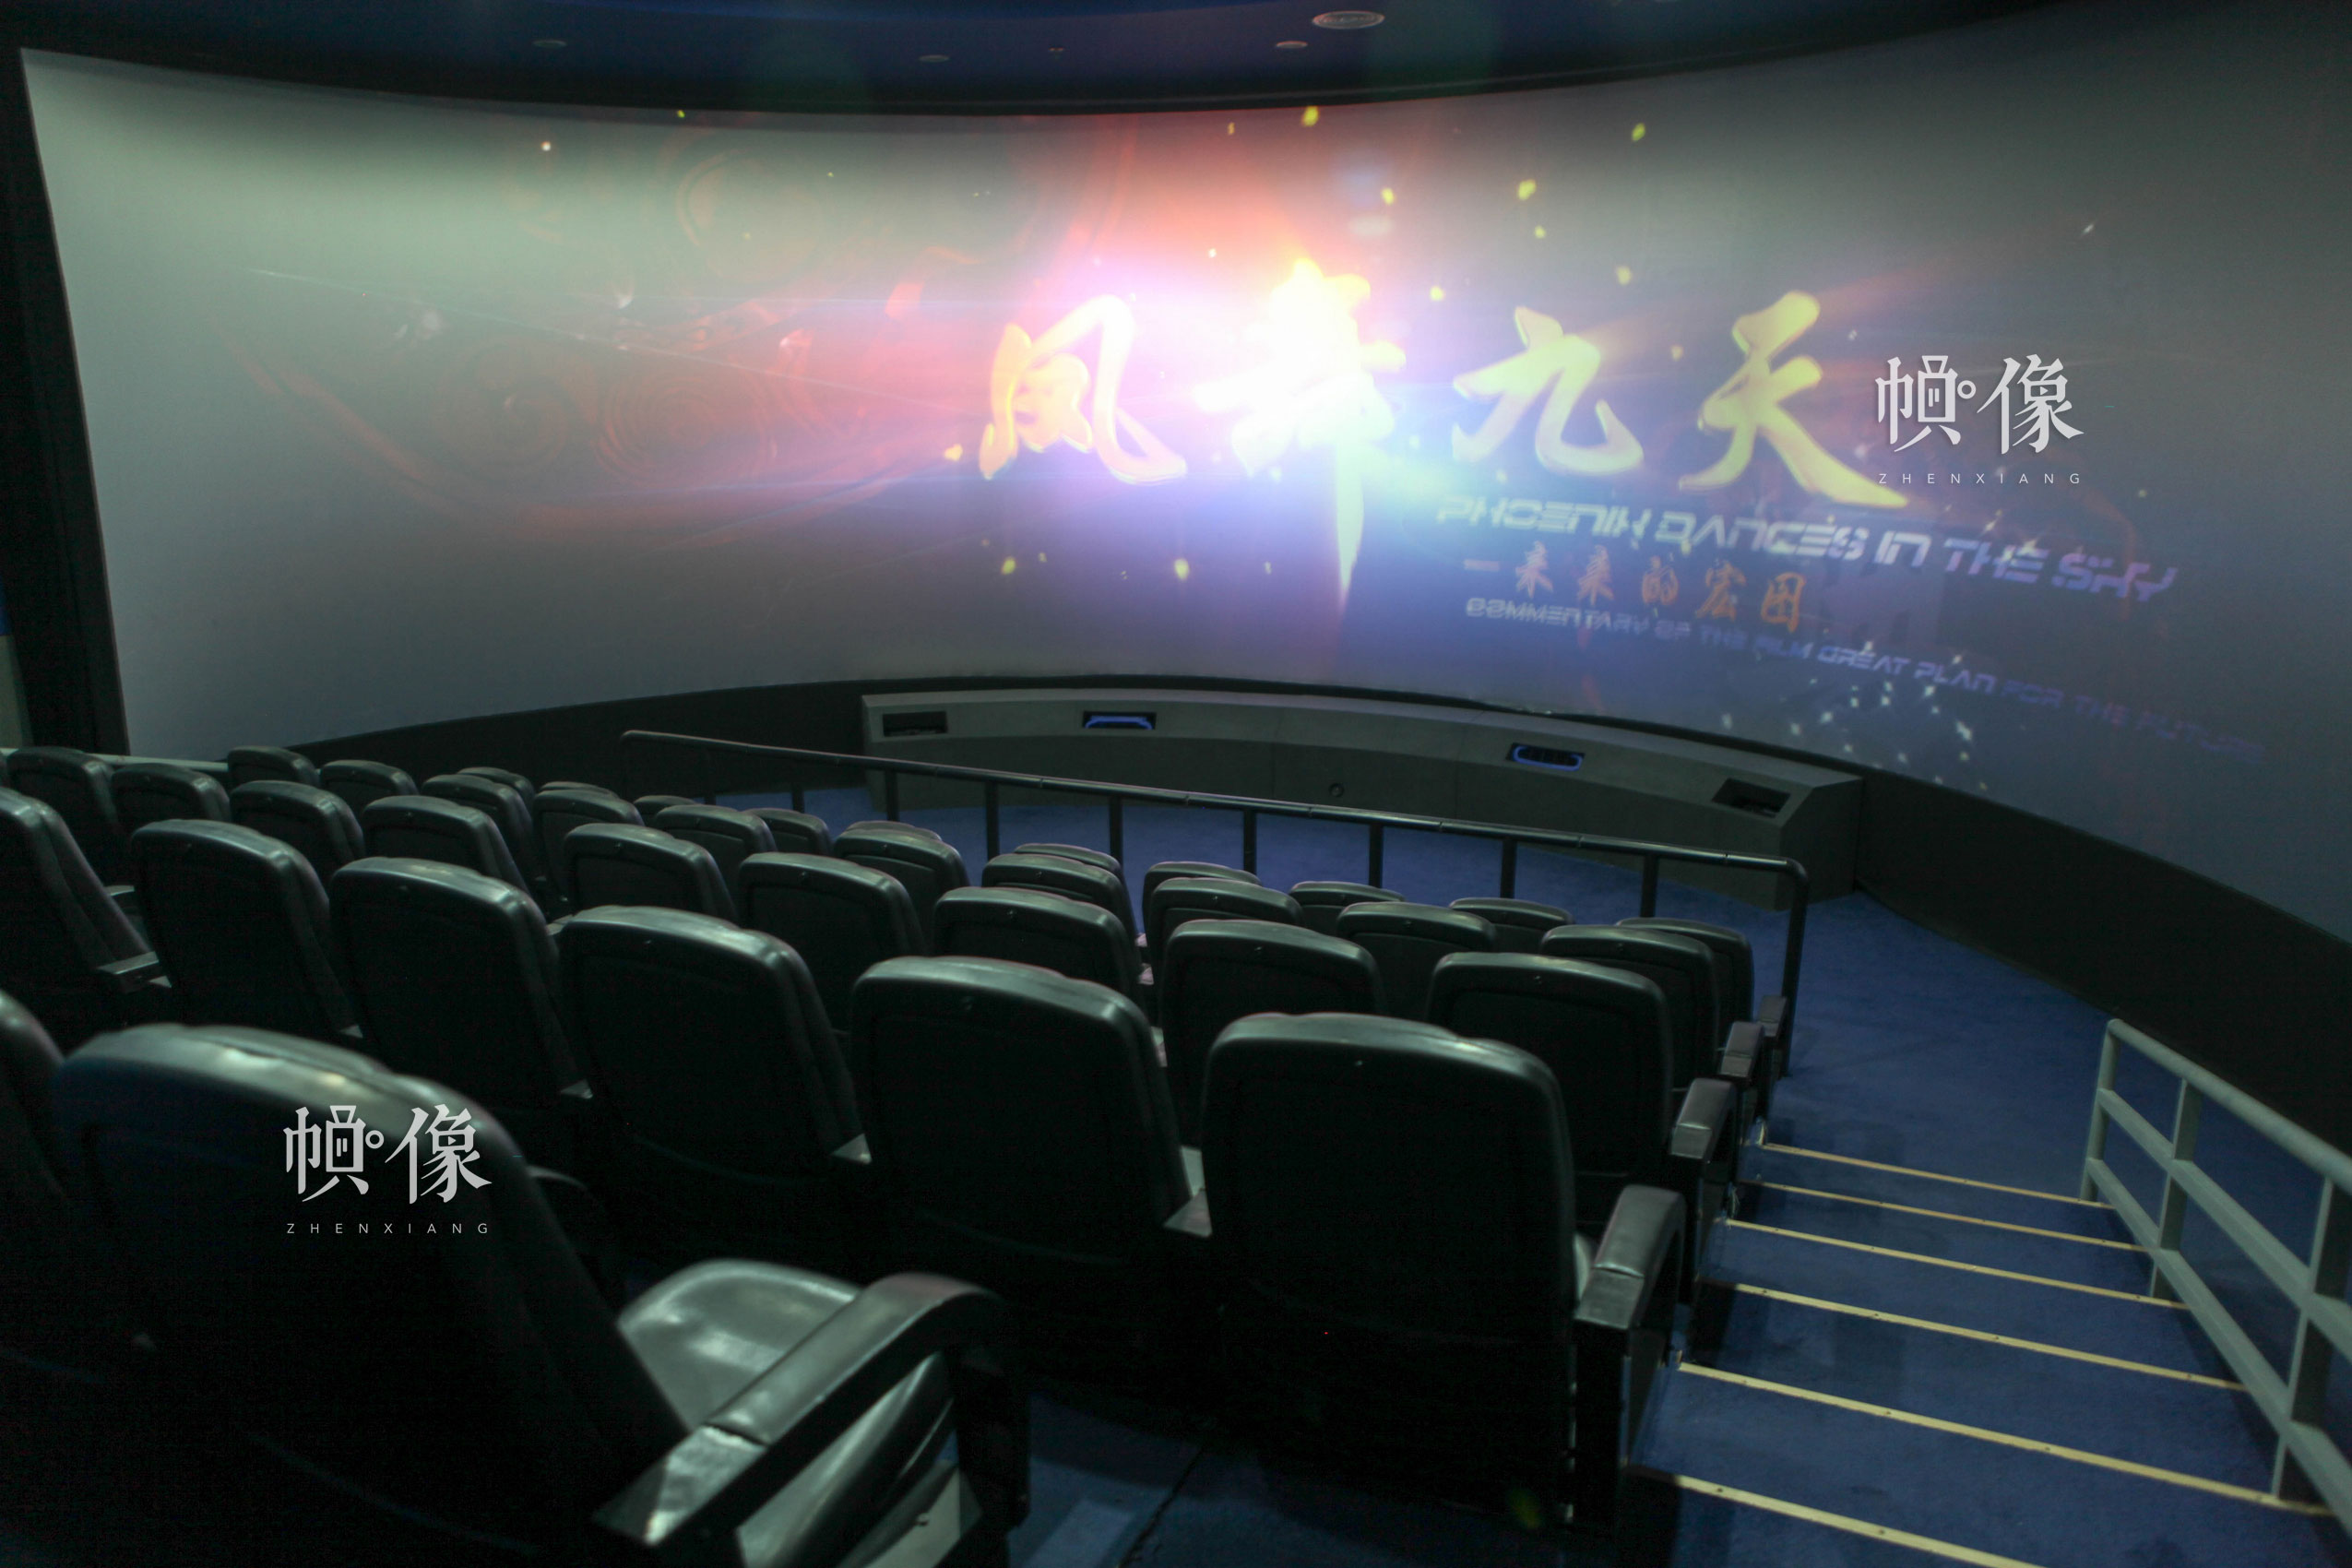 朝陽規劃藝術館4D動感影院，為180度動感環幕放映廳，由立體放映系統和動感座椅系統組成，擁有48位座椅。朝陽規劃藝術館供圖